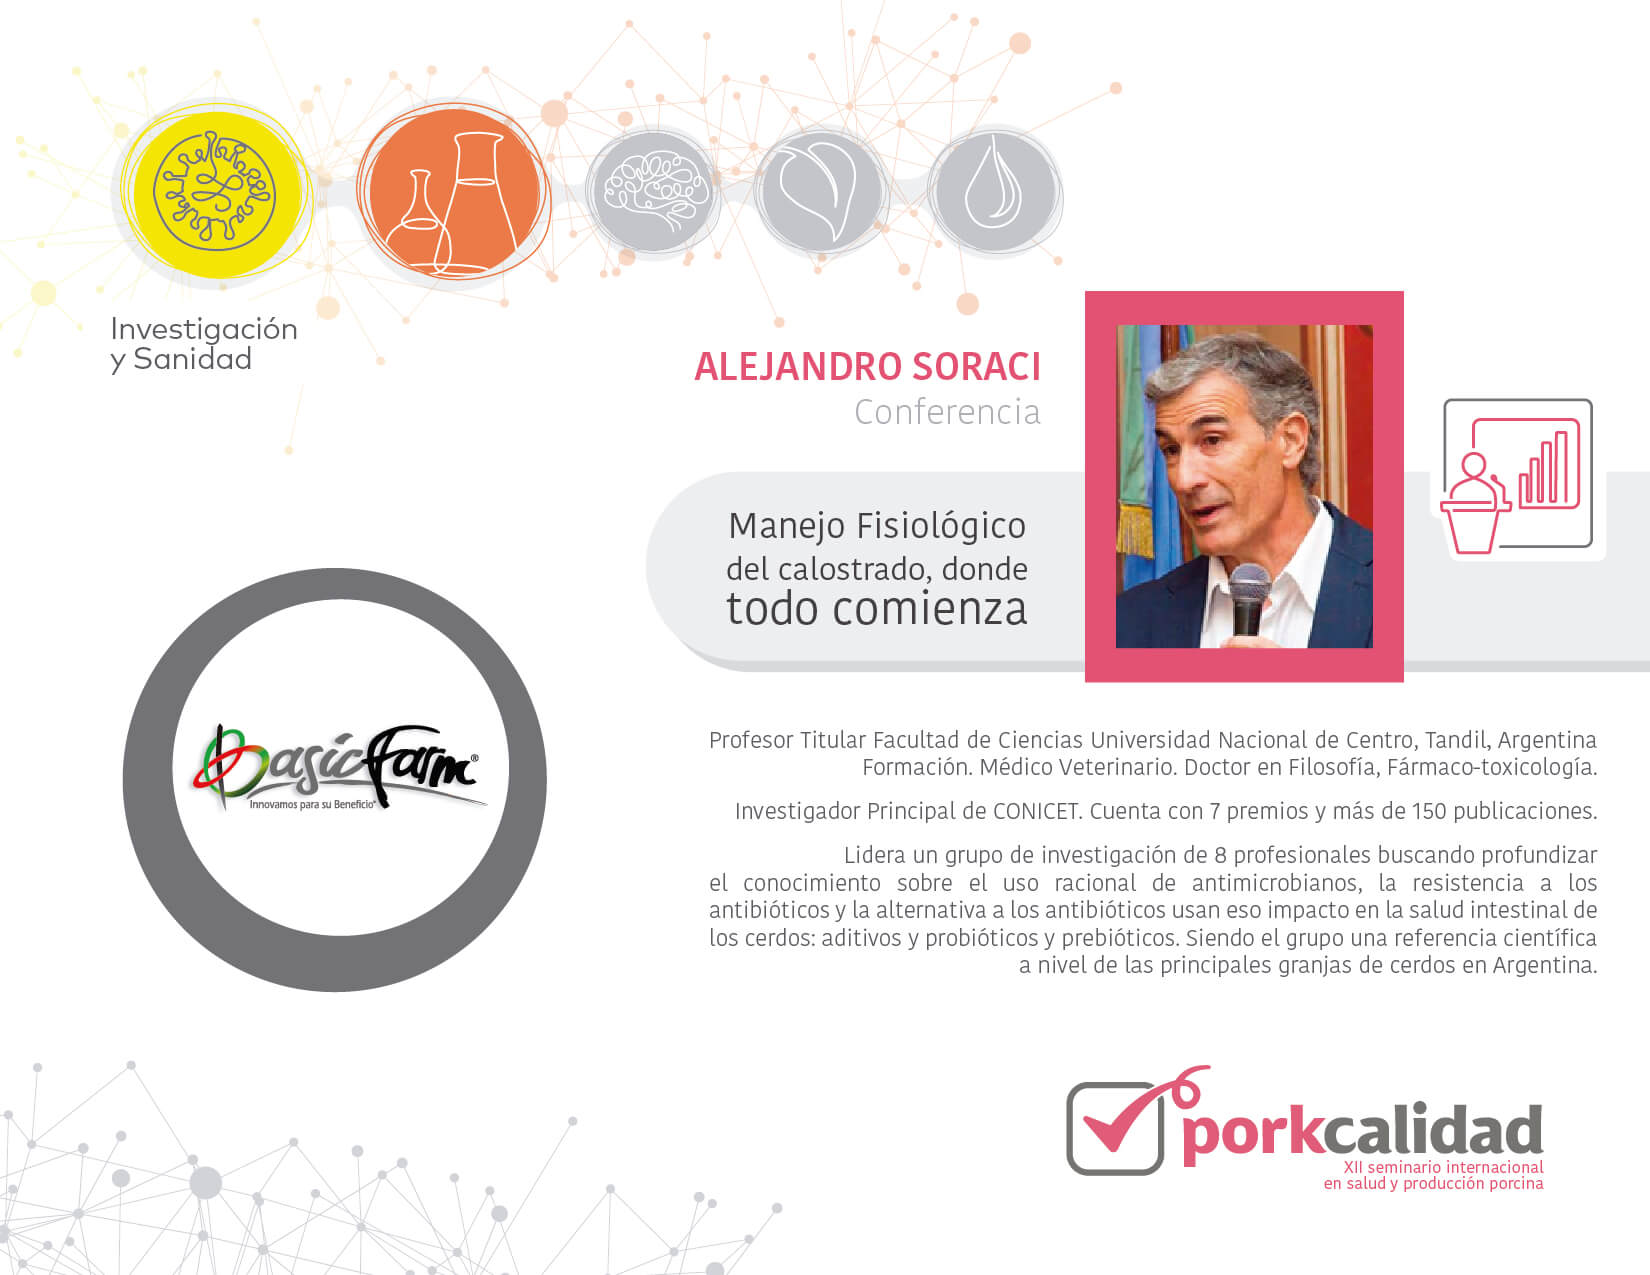 Porkcalidad2019-Conferencista2 (1)